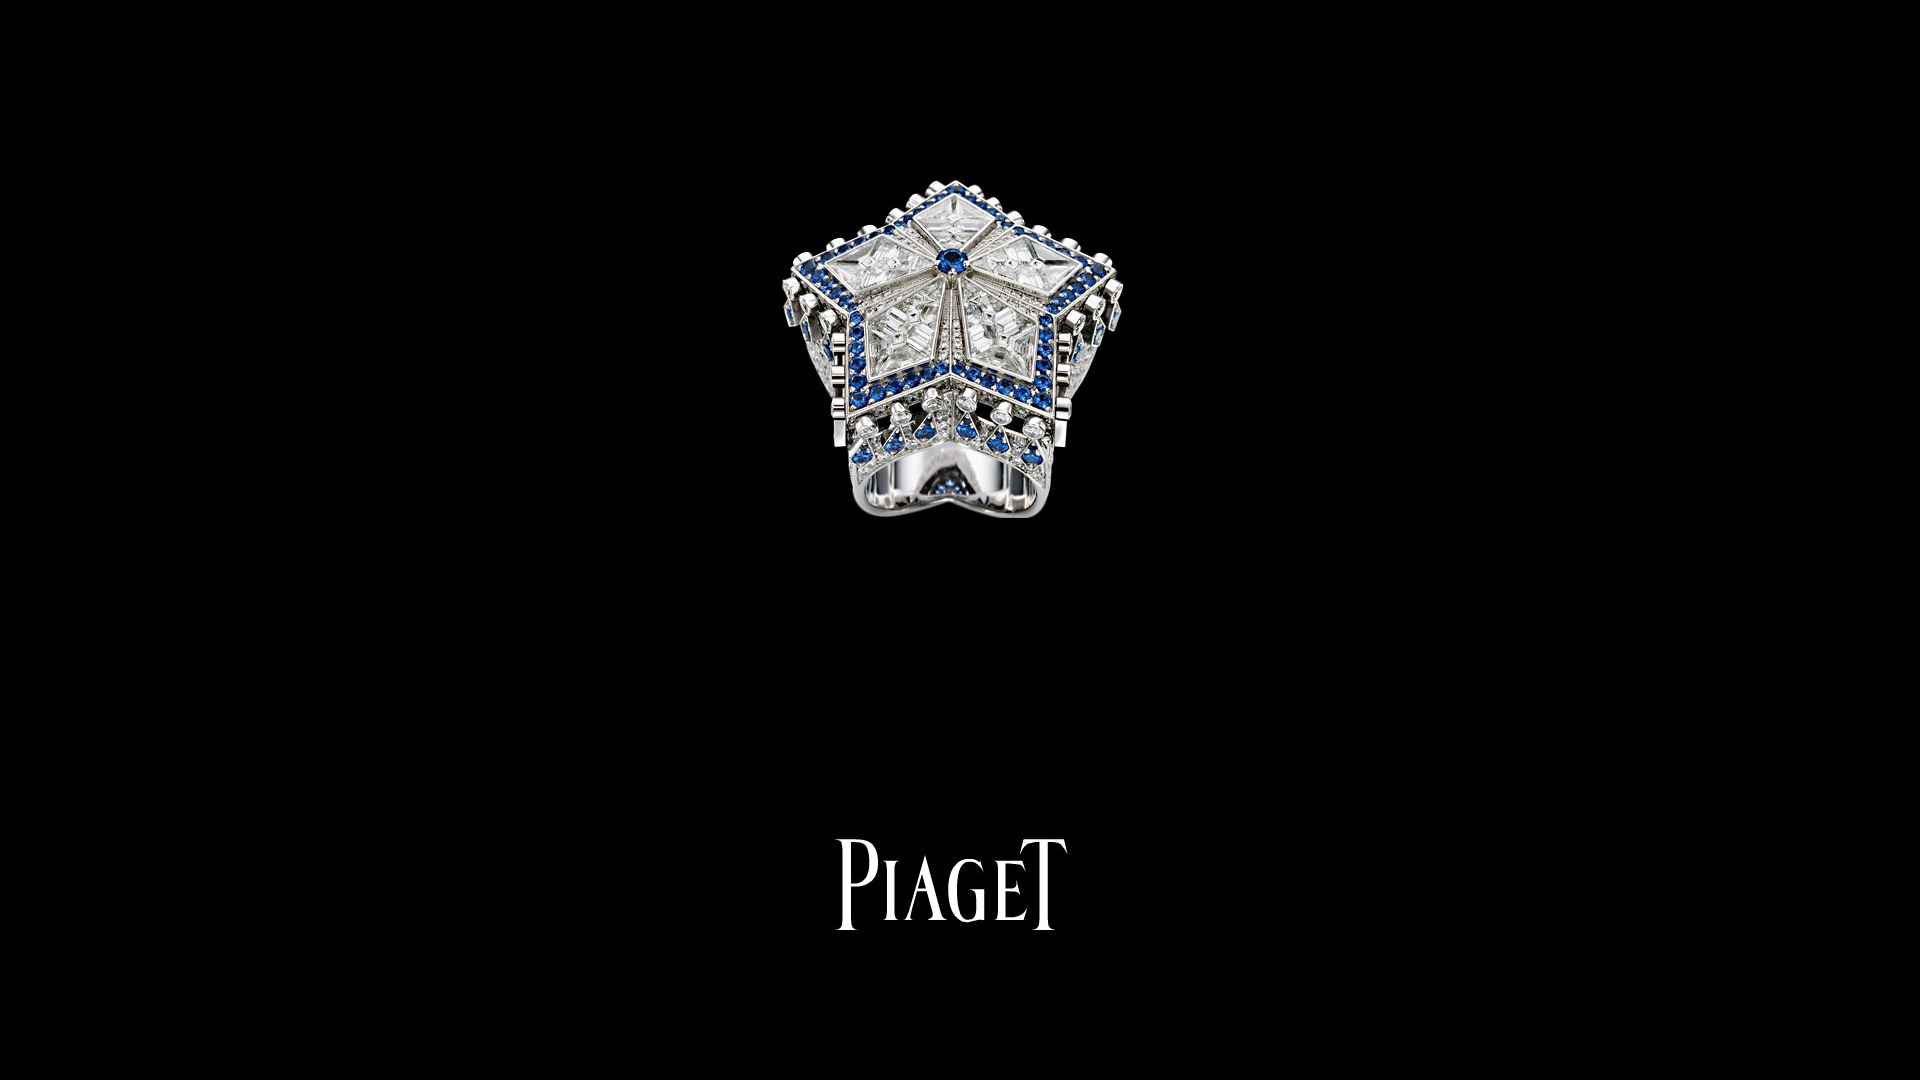 Piaget Diamantschmuck Wallpaper (1) #2 - 1920x1080